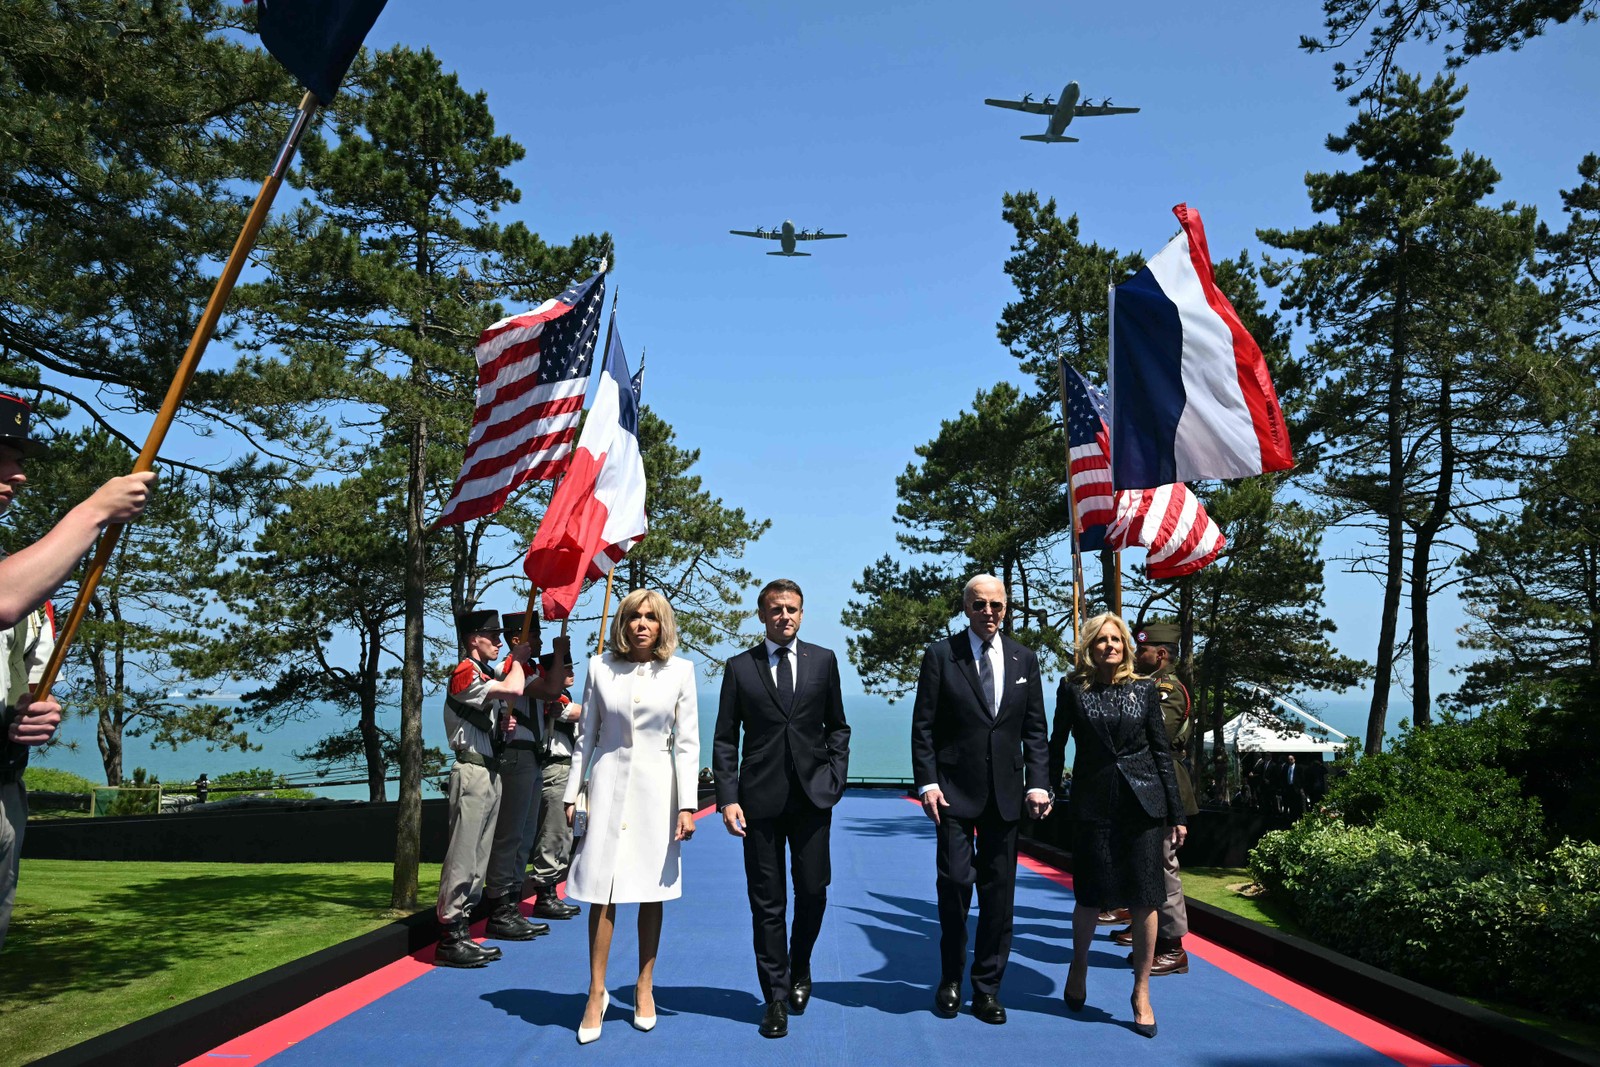 Aeronaves Douglas C-47 sobrevoam enquanto o presidente dos EUA Joe Biden (2º à direita), a primeira-dama dos EUA Jill Biden (direita), o presidente da França Emmanuel Macron (2º à esquerda) e sua esposa Brigitte Macron (esquerda) passam pelos porta-bandeiras durante a cerimônia dos EUA que marca o 80º aniversário do desembarque dos Aliados do "Dia D" da Segunda Guerra Mundial na Normandia, no Cemitério e Memorial Americano da Normandia em Colleville-sur-Mer, com vista para a Praia de Omaha. — Foto: SAUL LOEB / AFP